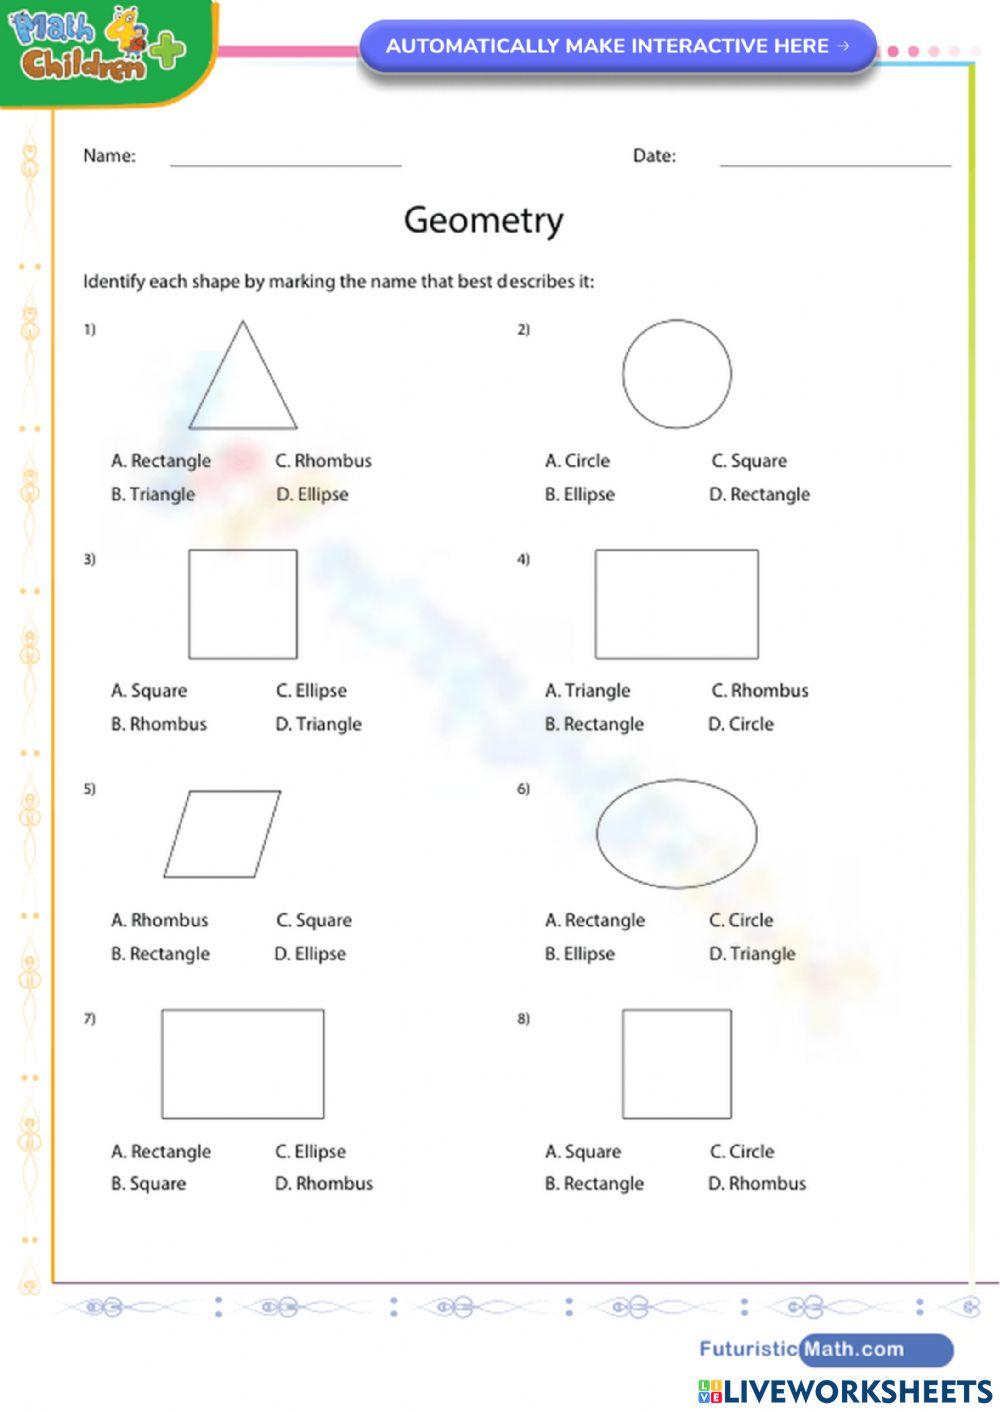 Geometry Shapes worksheet | Live Worksheets